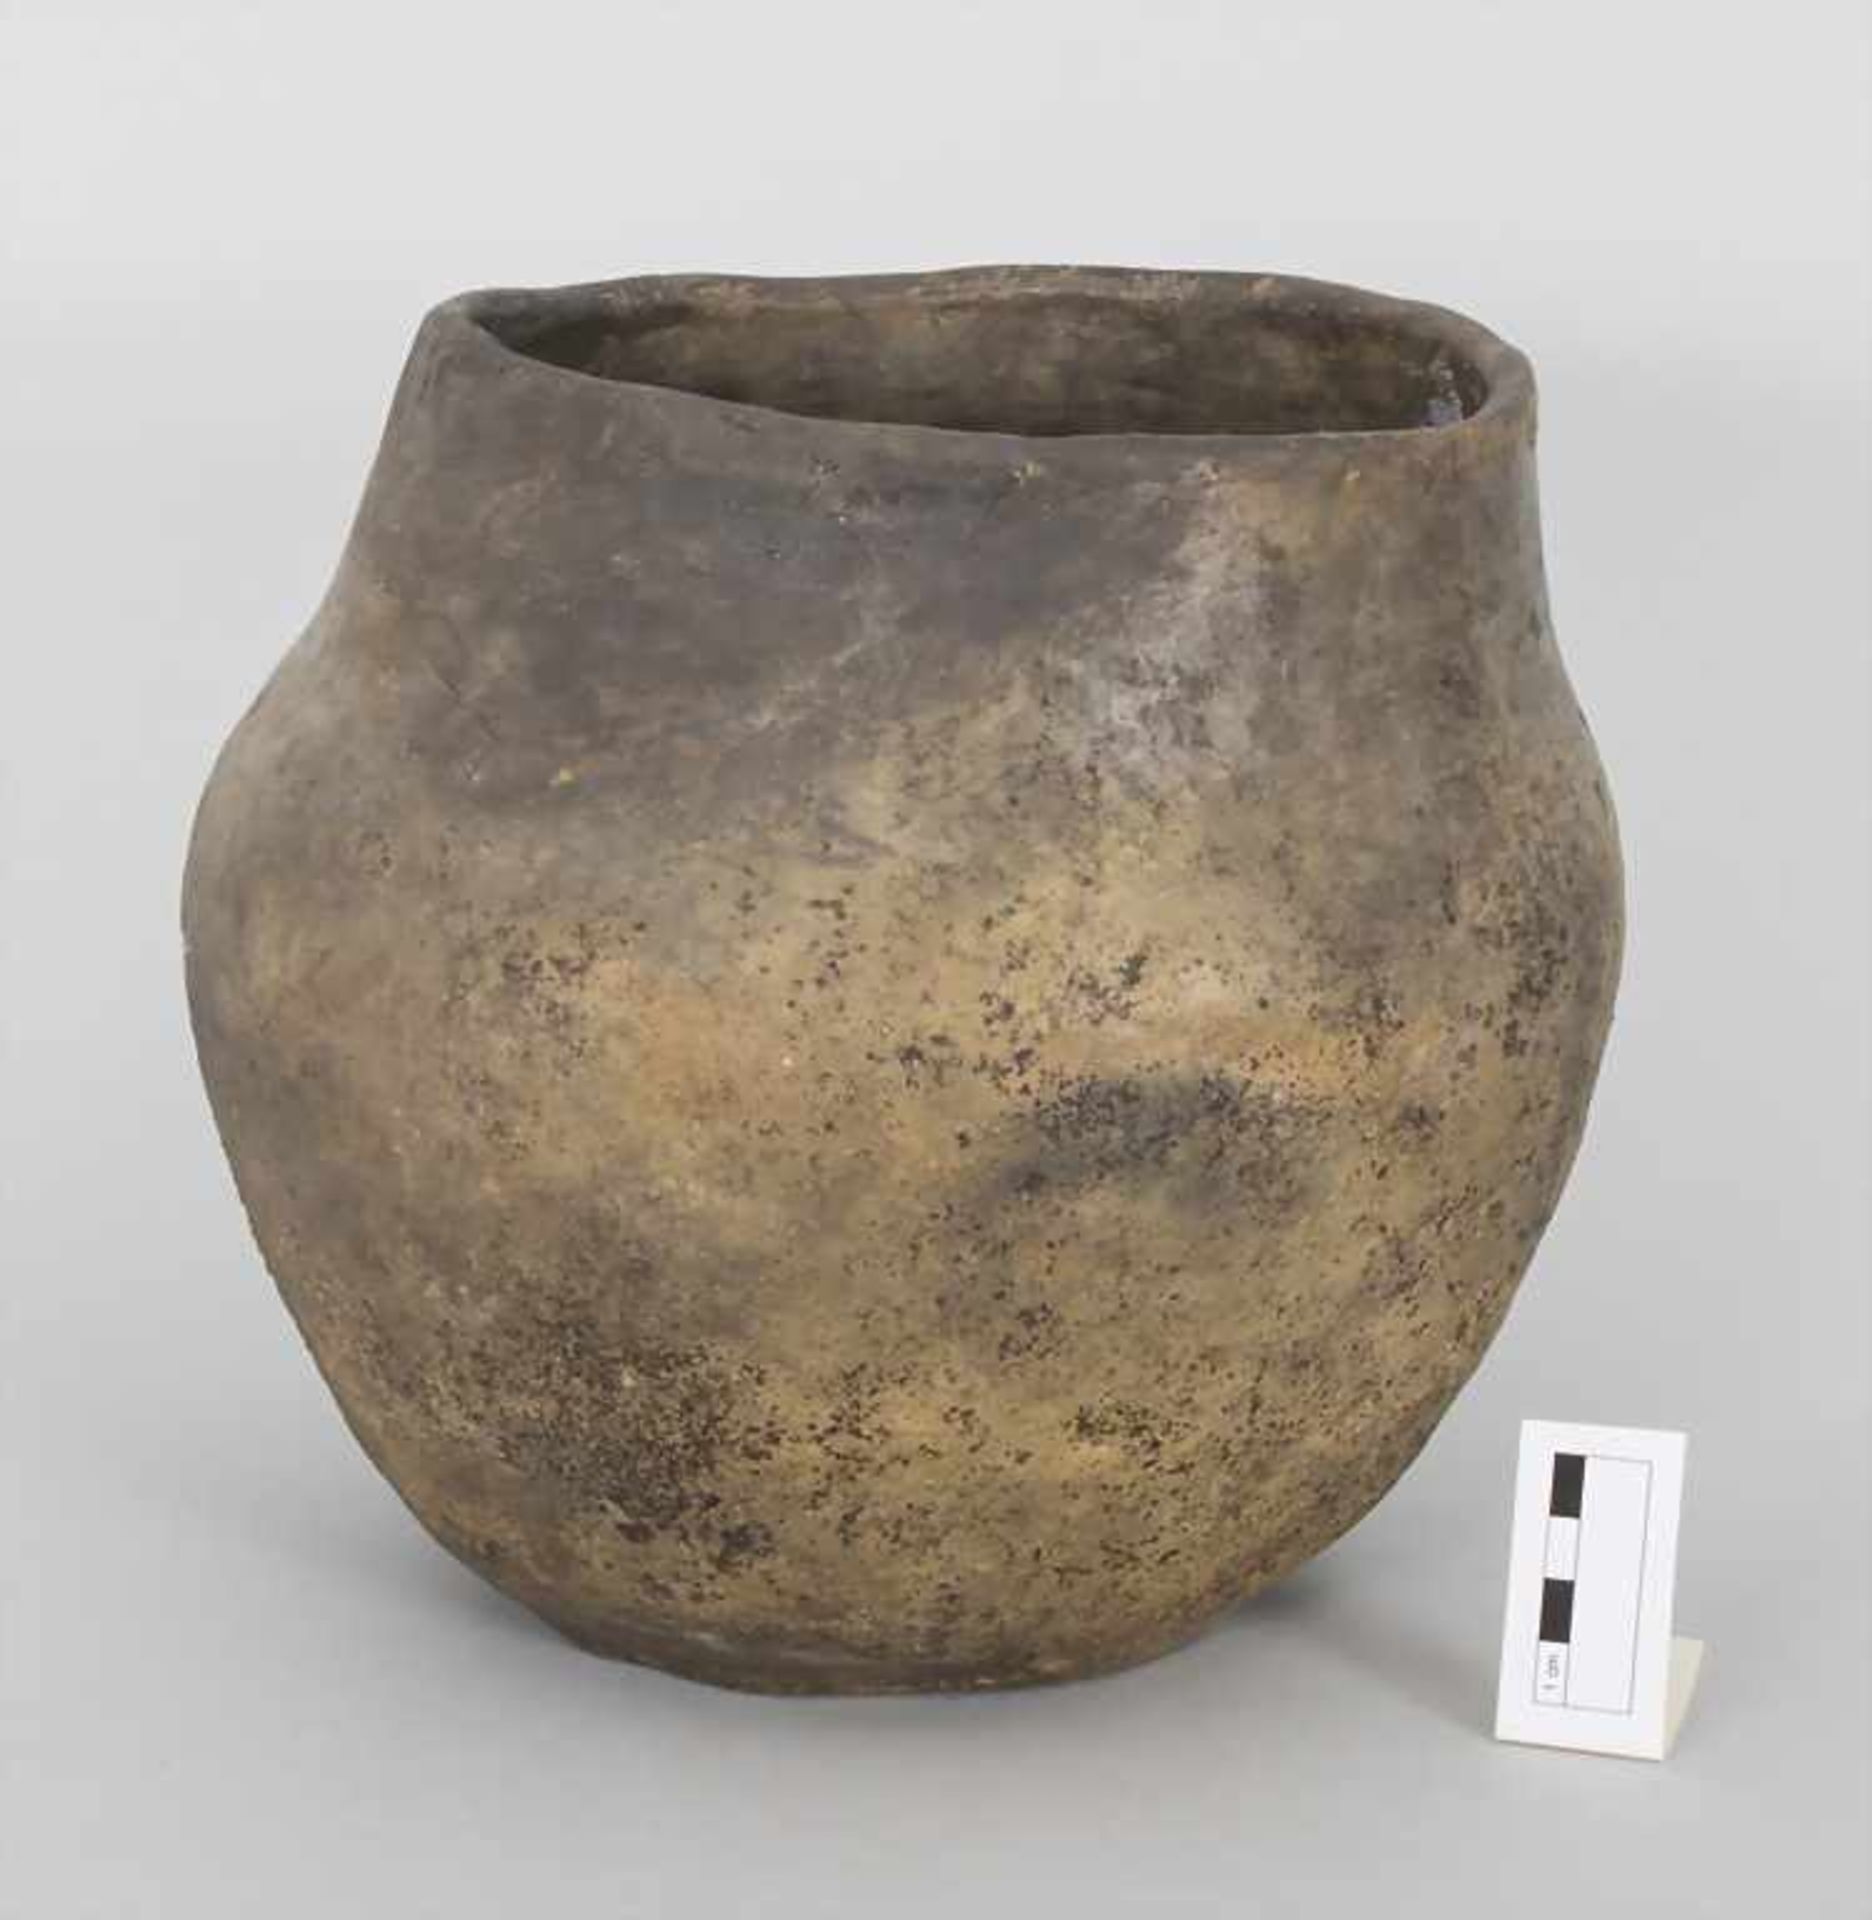 Bronzezeitliches Keramik-Gefäß / A Bronze Age ceramic vessel, Lausitzer Kultur, 9. - 6. Jh. v. Chr. - Image 2 of 5